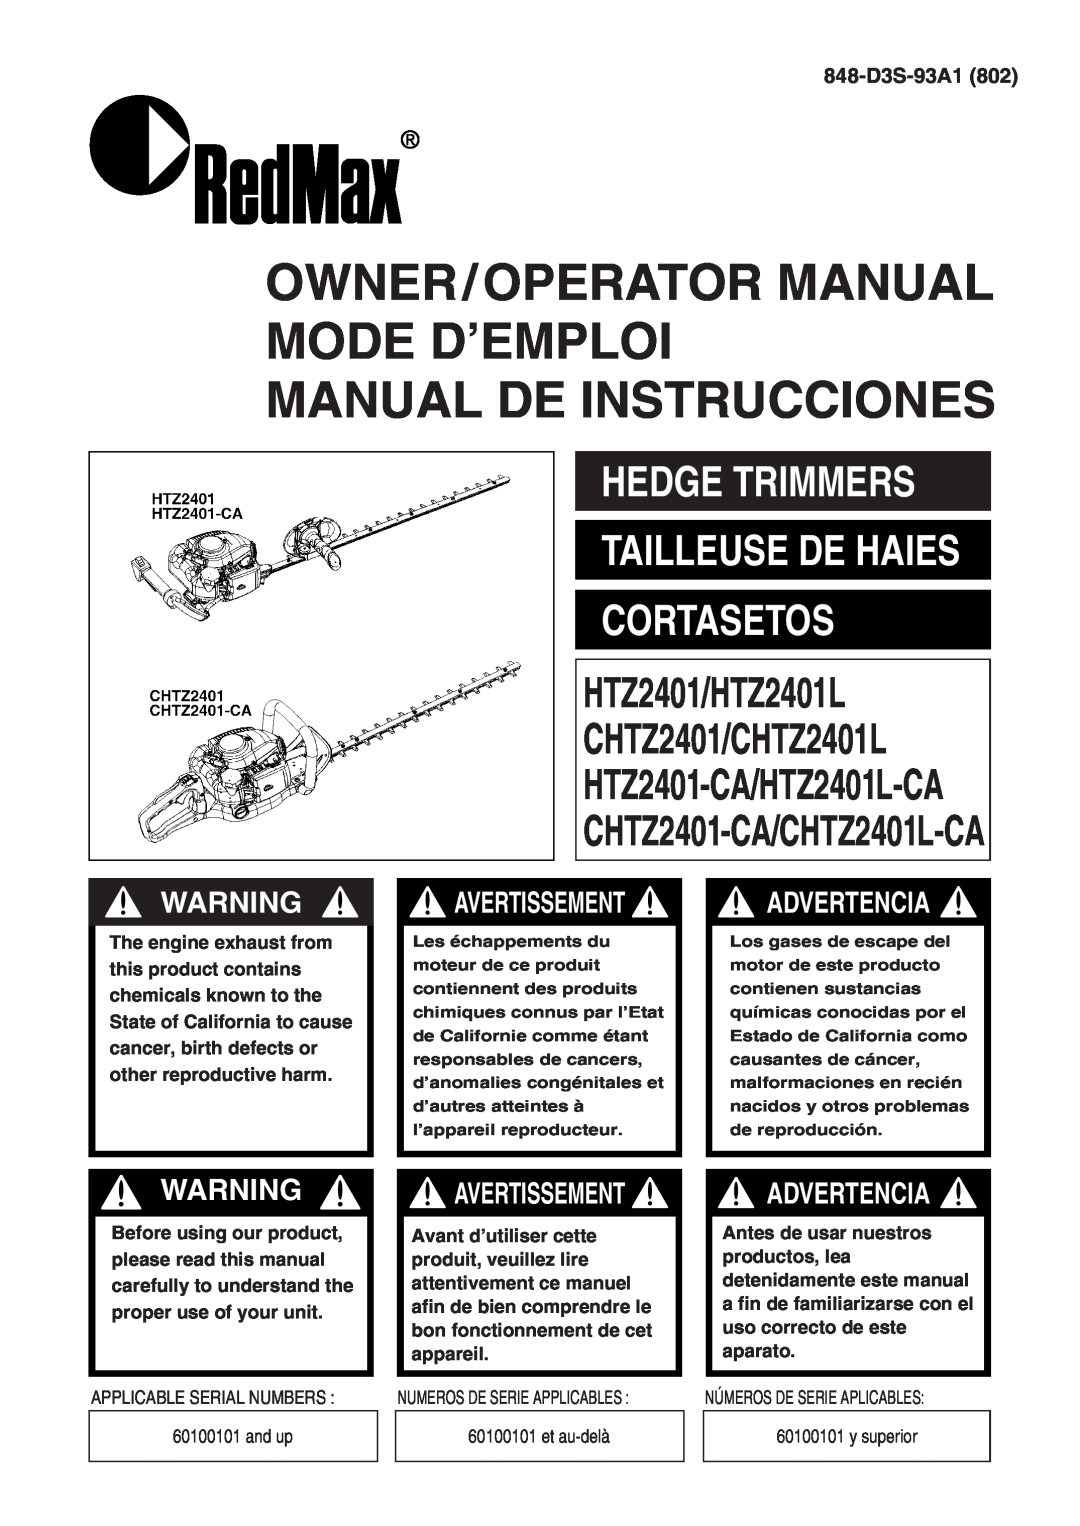 Zenoah HTZ2401-CA, HTZ2401L manual Hedge Trimmers Tailleuse De Haies Cortasetos, 848-D3S-93A1802, Manual De Instrucciones 